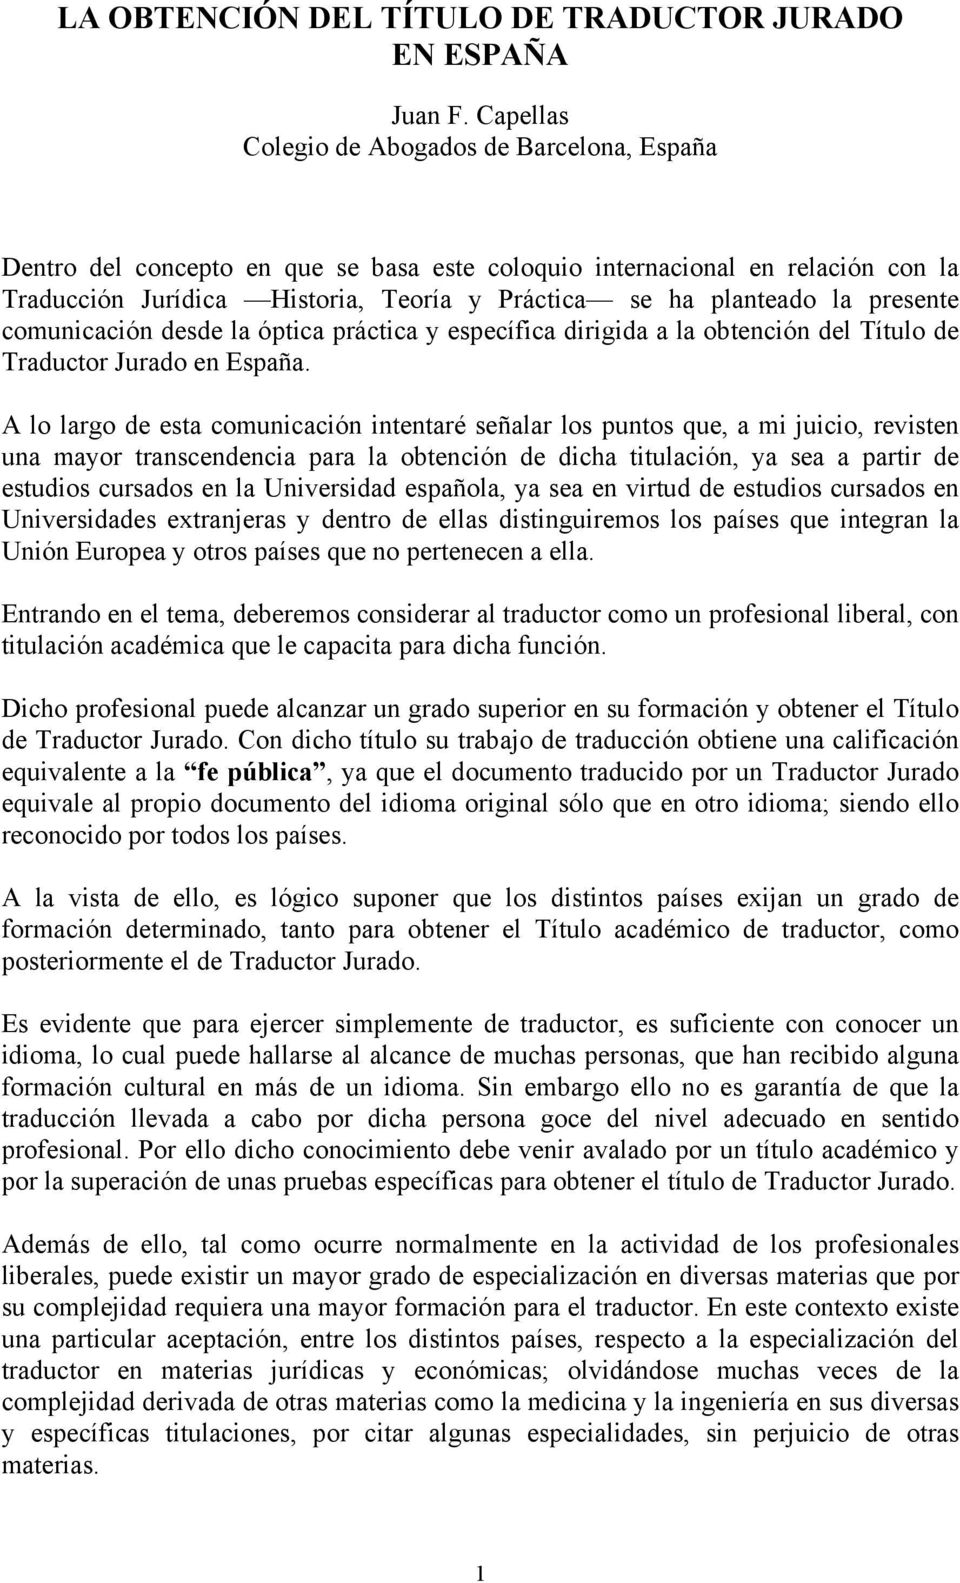 presente comunicación desde la óptica práctica y específica dirigida a la obtención del Título de Traductor Jurado en España.